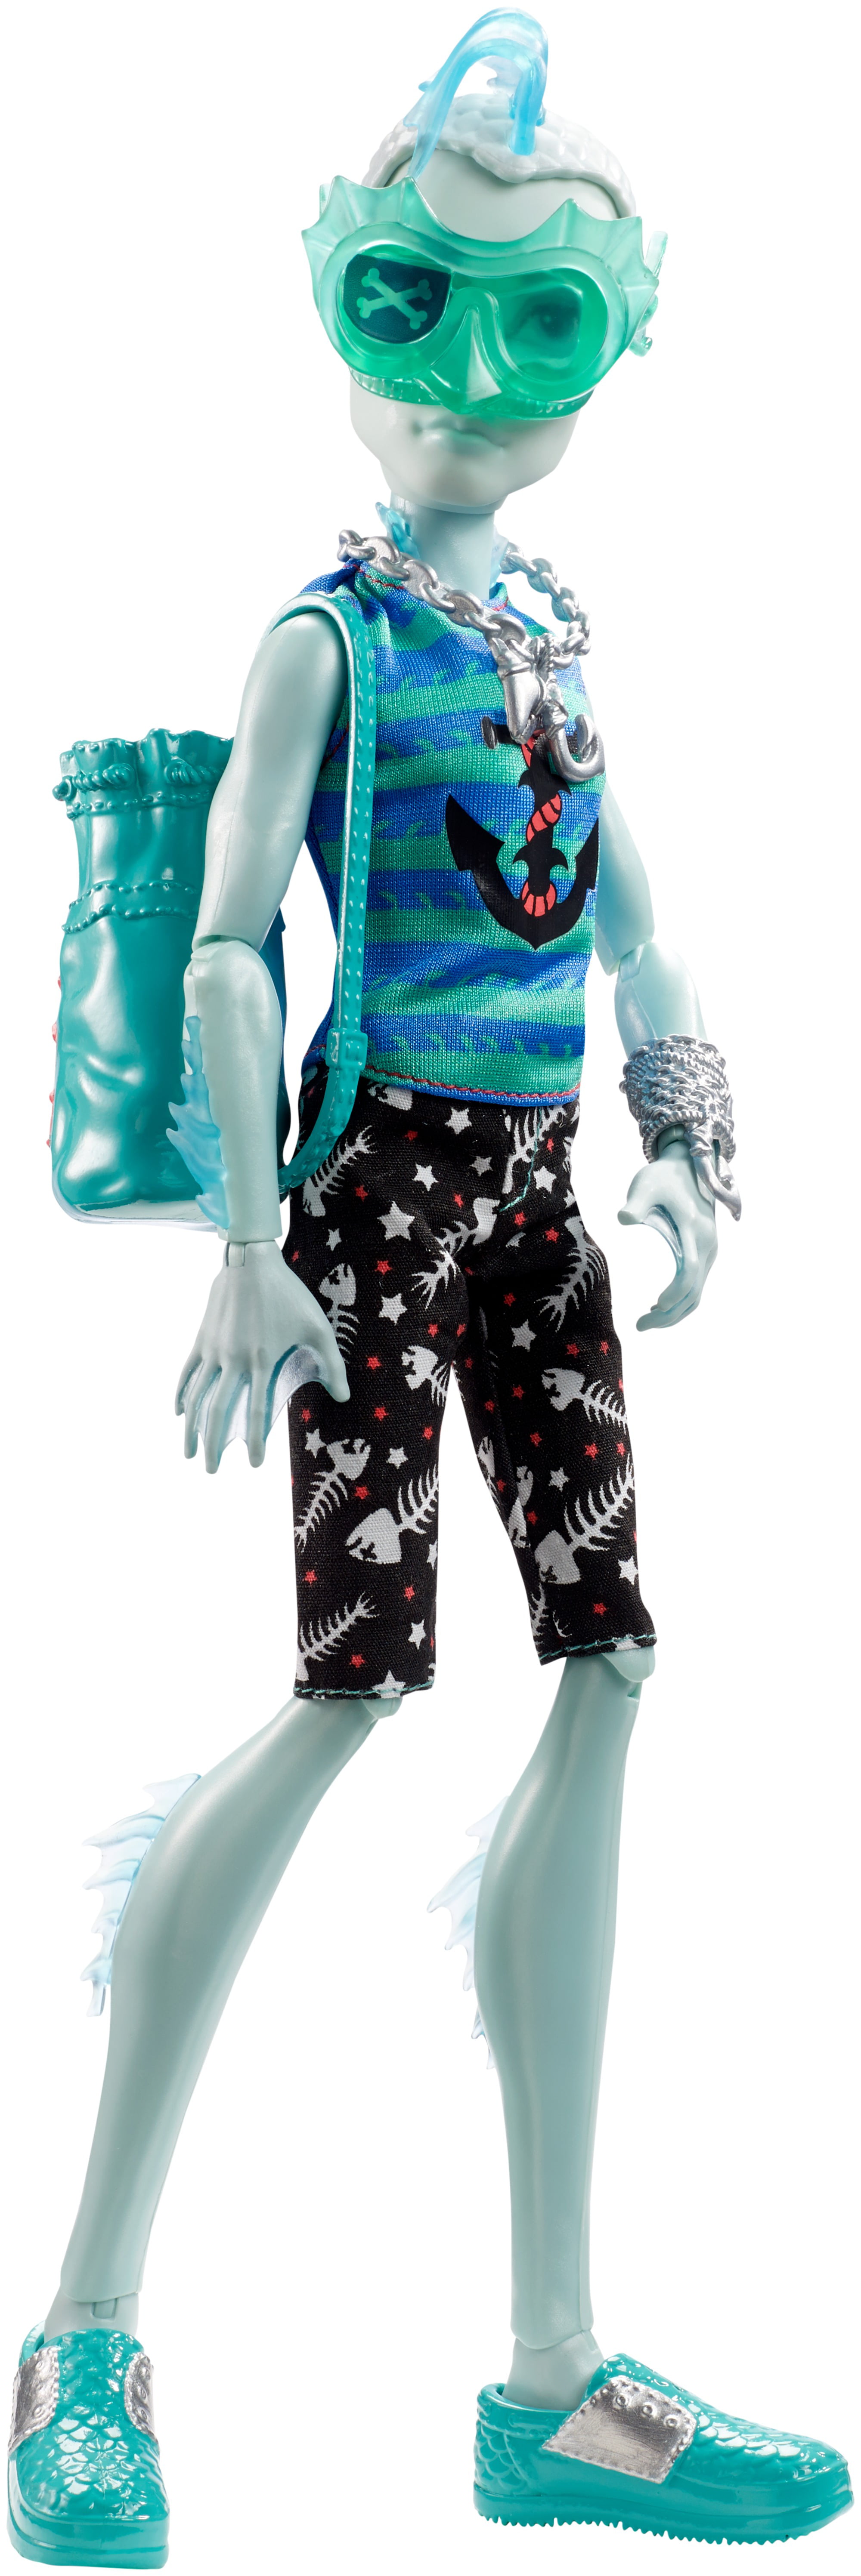 Monster High Shriekwrecked Shriek Mates Gillington "Gil" Webber Doll